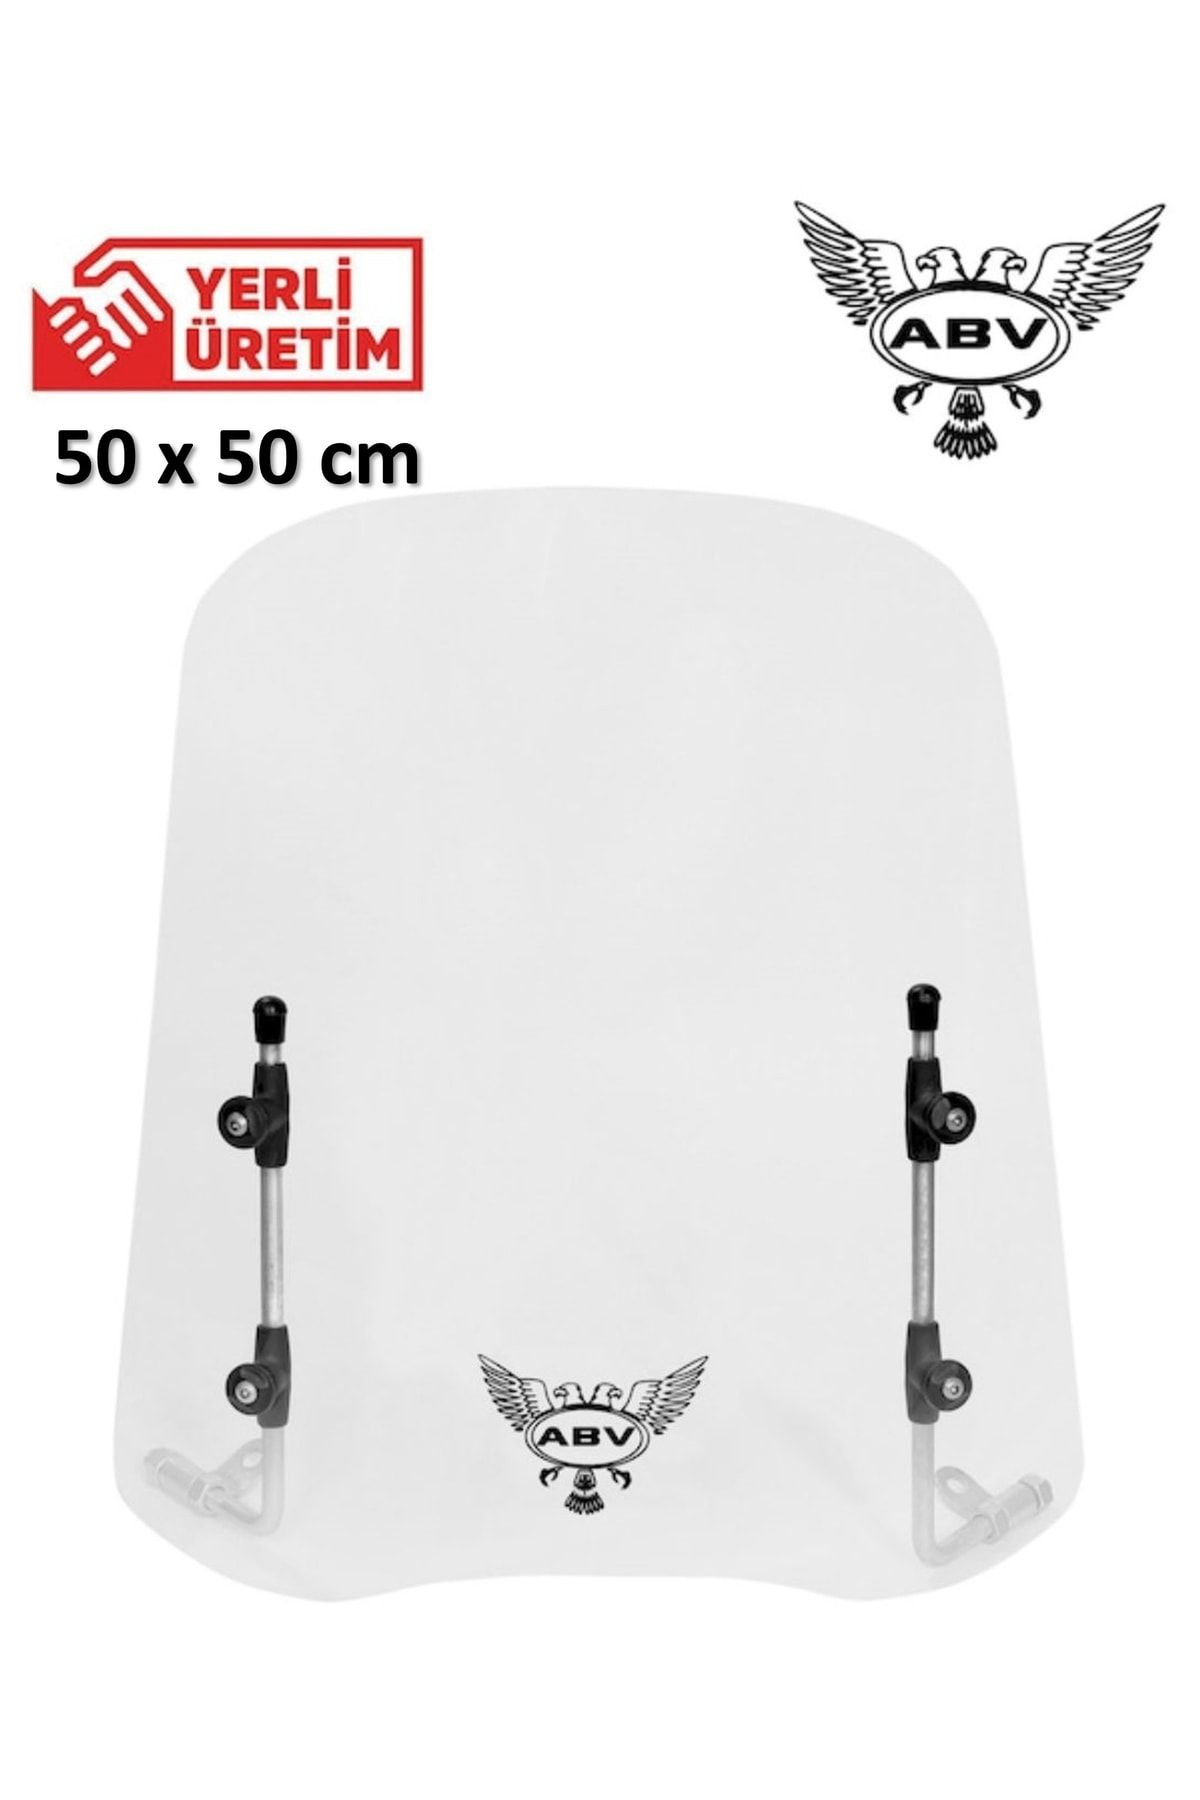 ABV Üniversal Siperlik (49X49 CM) Bağlantı Ekipmanı Motosiklet Siperliği Camı Ön Camı